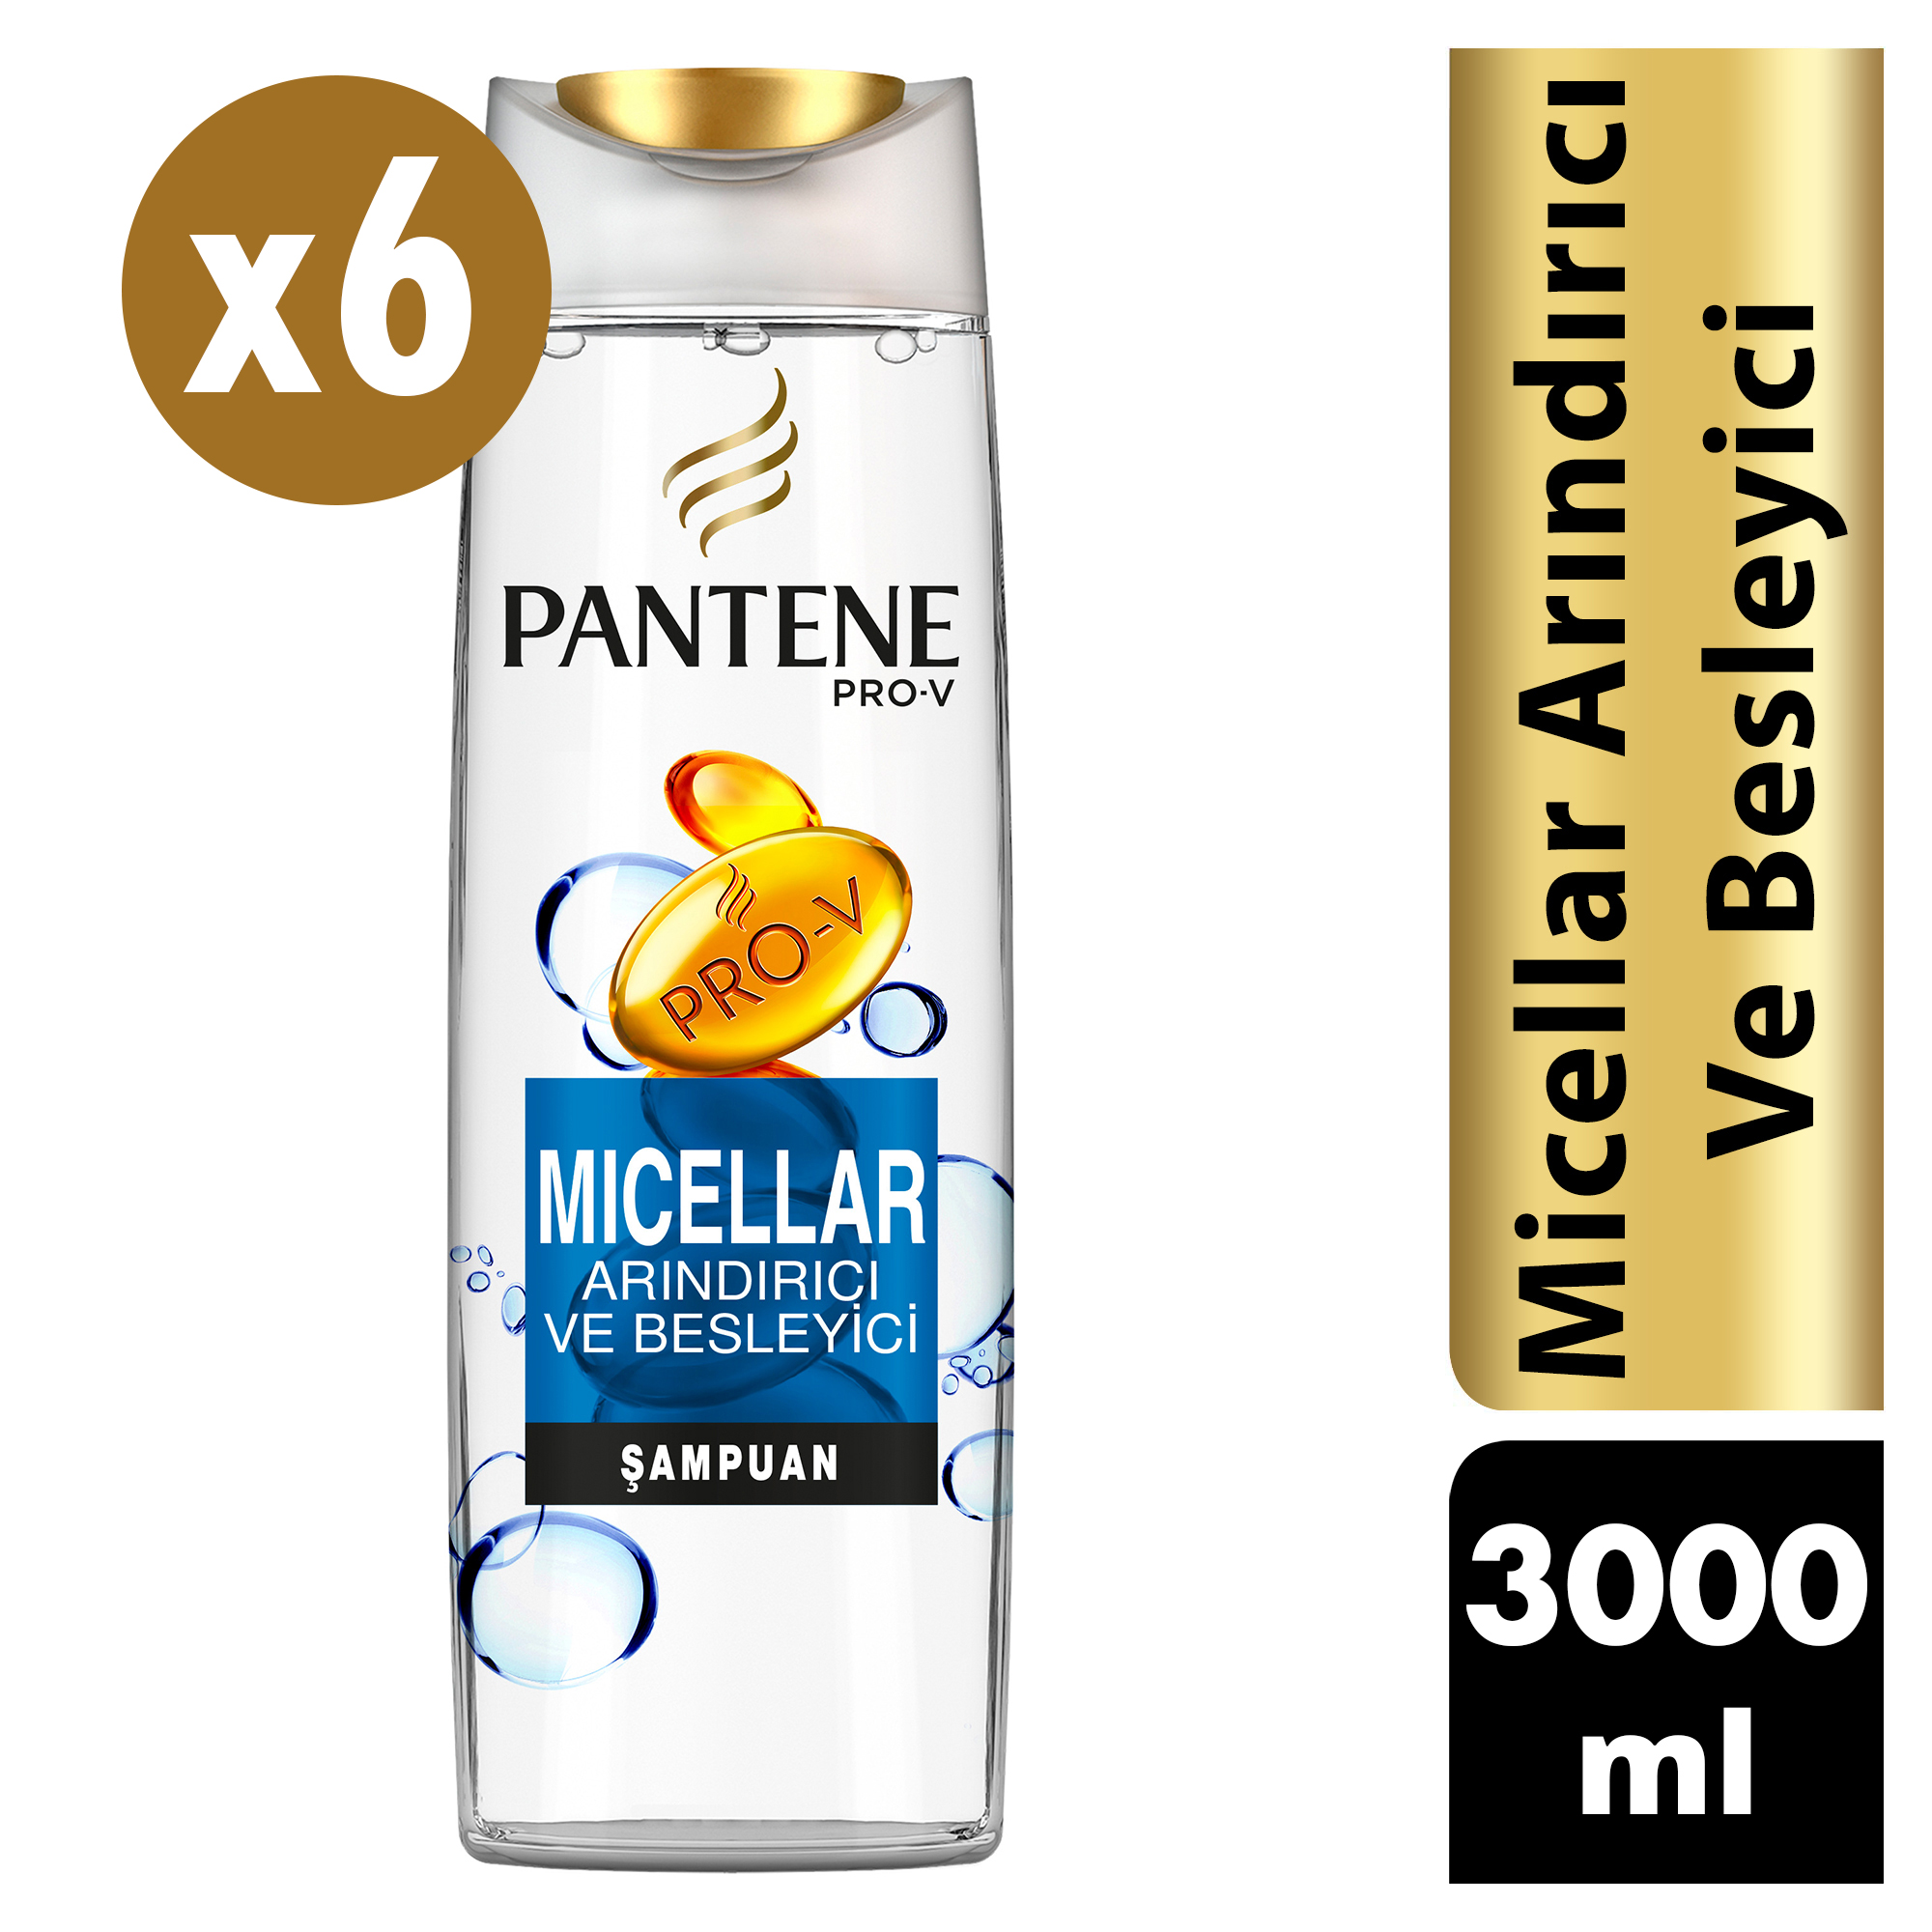 Pantene Micellar Arındırıcı ve Besliyici Şampuan 6*500=3000 ml